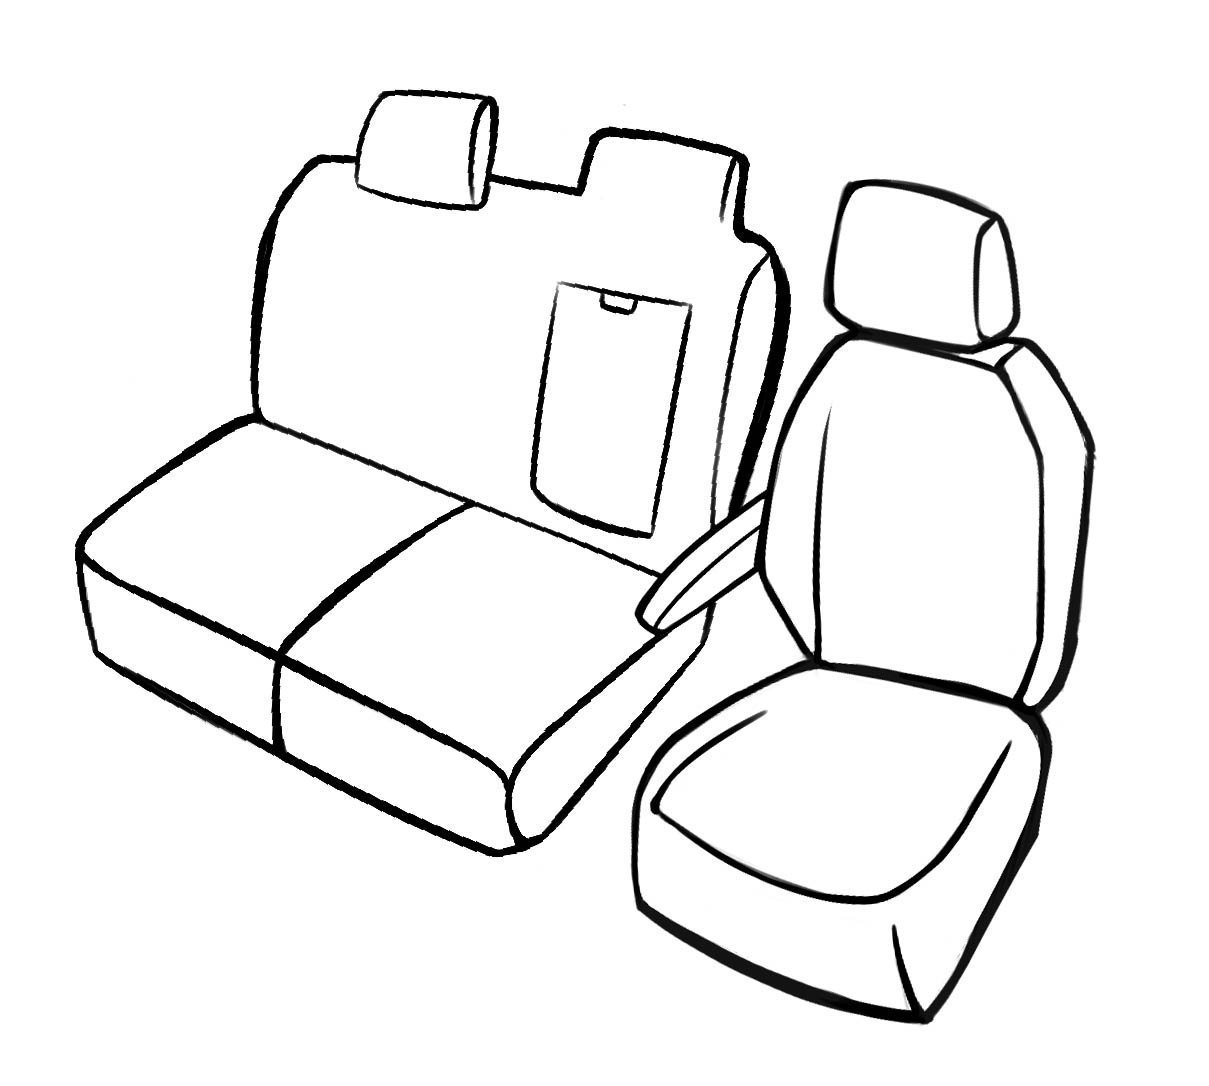 Premium Housse de siège pour Peugeot Expert 2016- auj., 1 housse de siège simple avant + housse d'accoudoir, 1 couverture de banc double